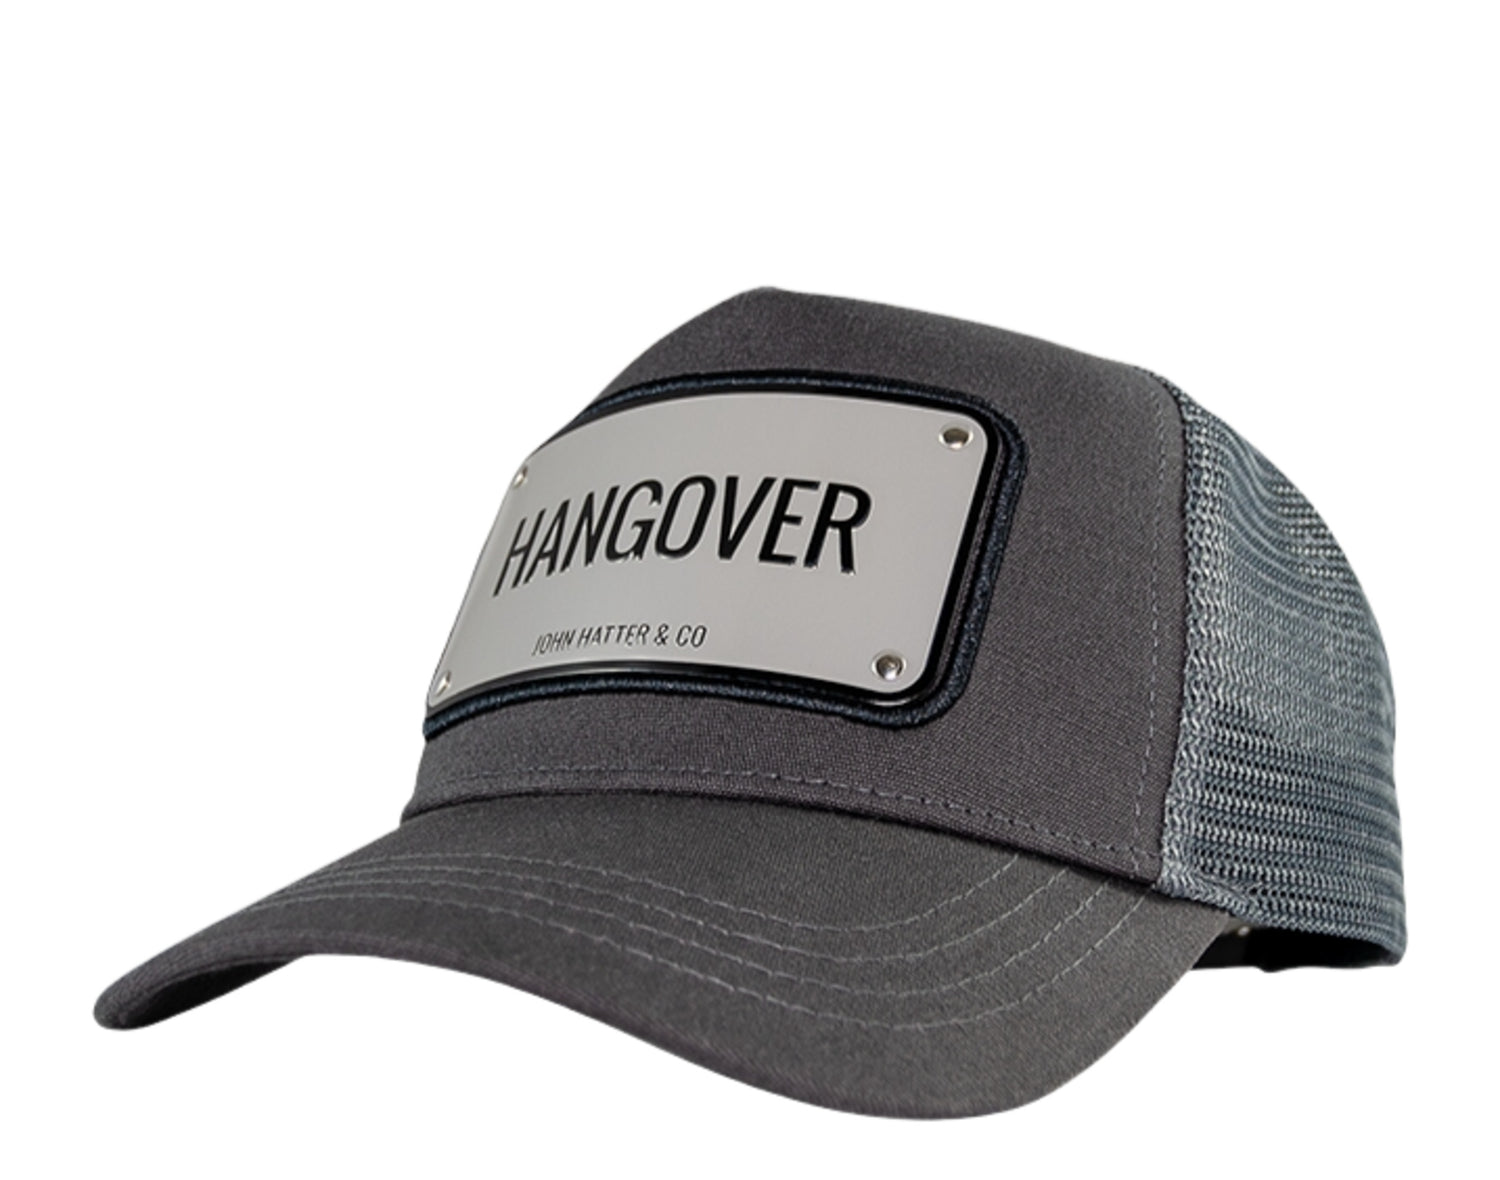 John Hatter & Co Hangover Trucker Hat